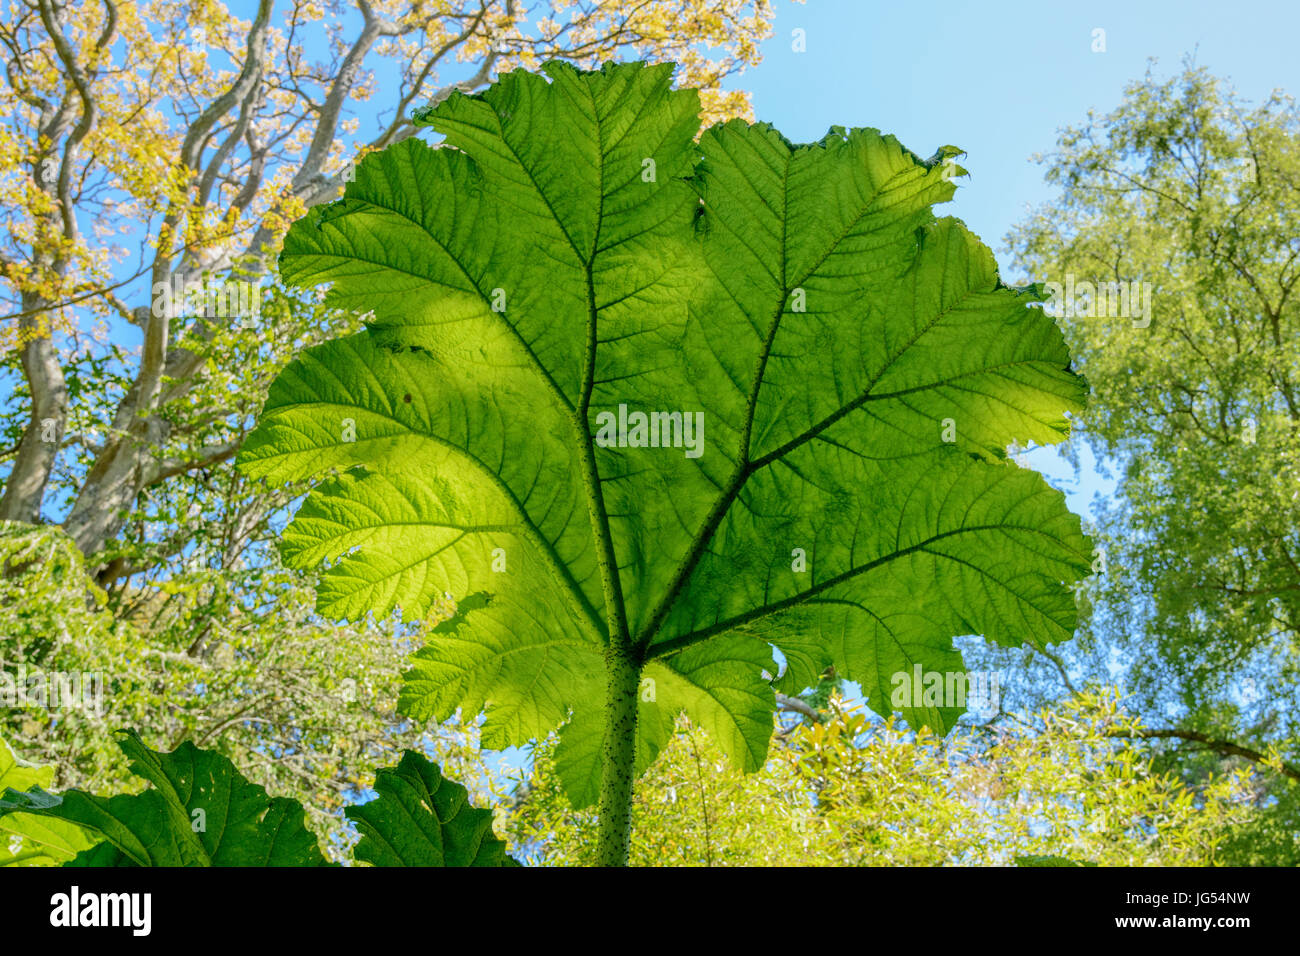 La rhubarbe géante Gunnera manicata (feuilles). Aussi connu comme la rhubarbe, rhubarbe brésilien chilien de dinosaures, de l'alimentation et le Figuier de la rhubarbe. Famille : Gunneraceae Banque D'Images